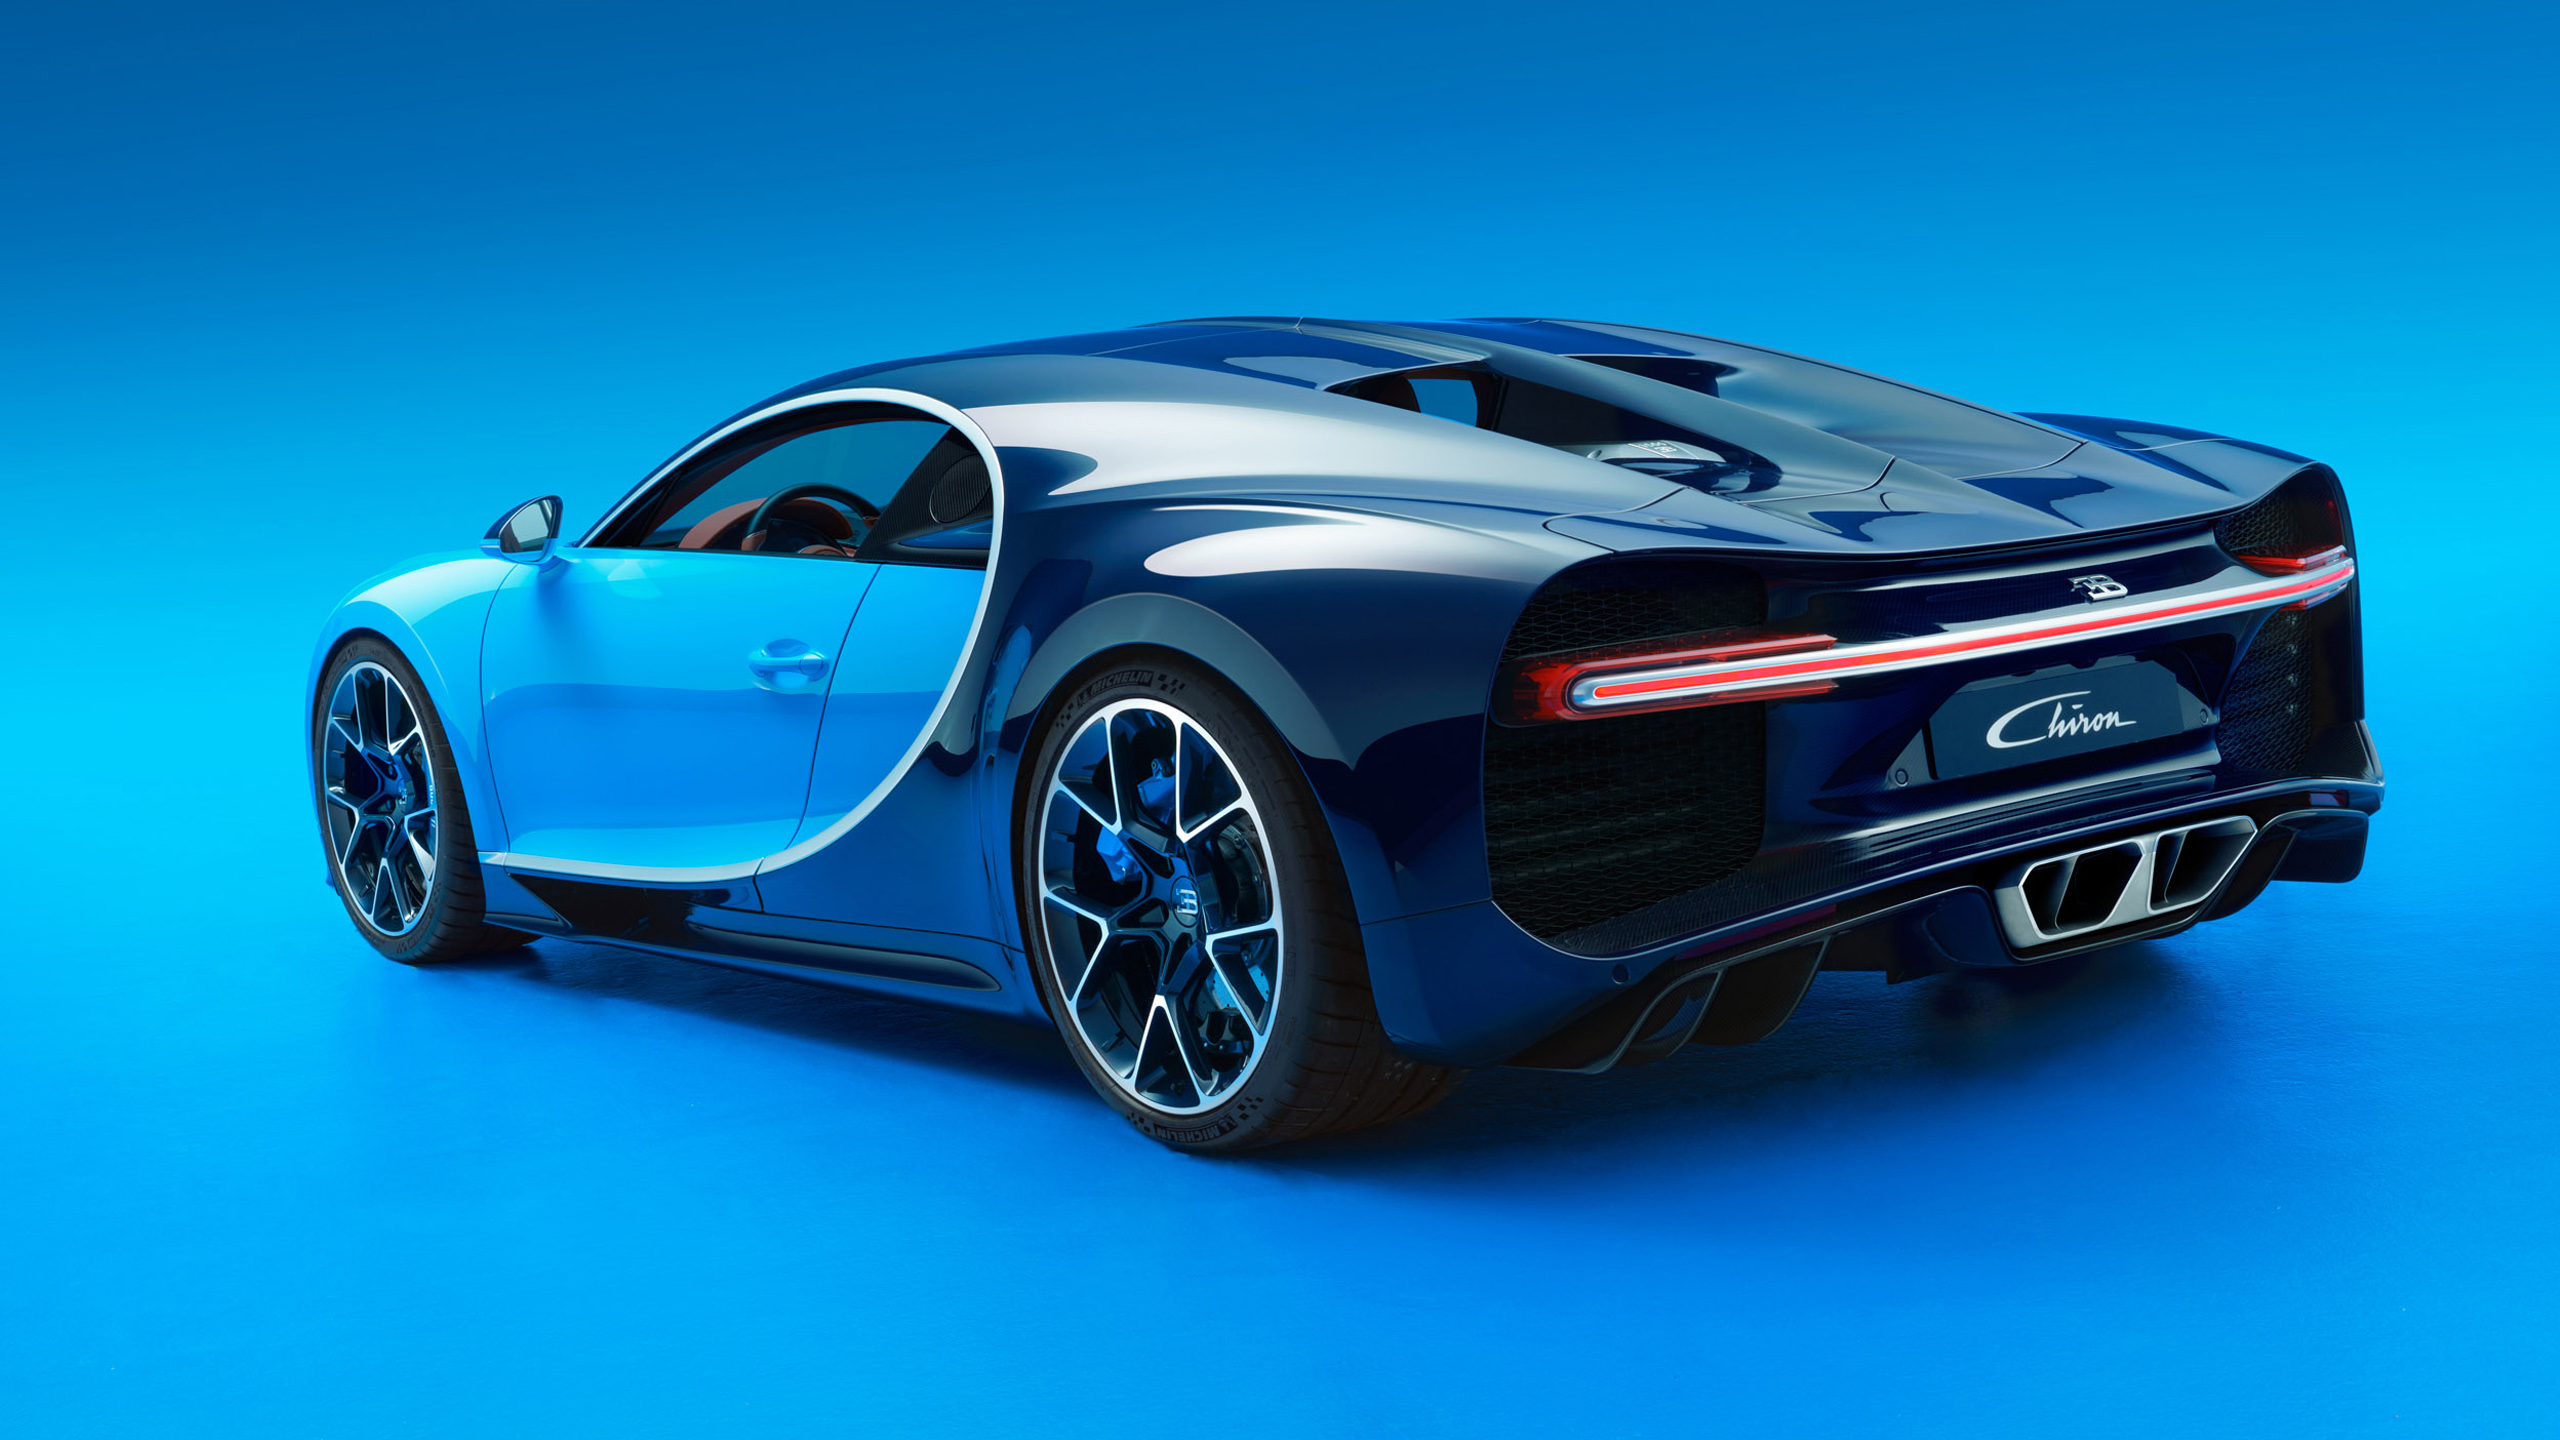 
... và đuôi xe của Bugatti Chiron có thiết kế giống bản phác họa do Selipanov đưa ra.
